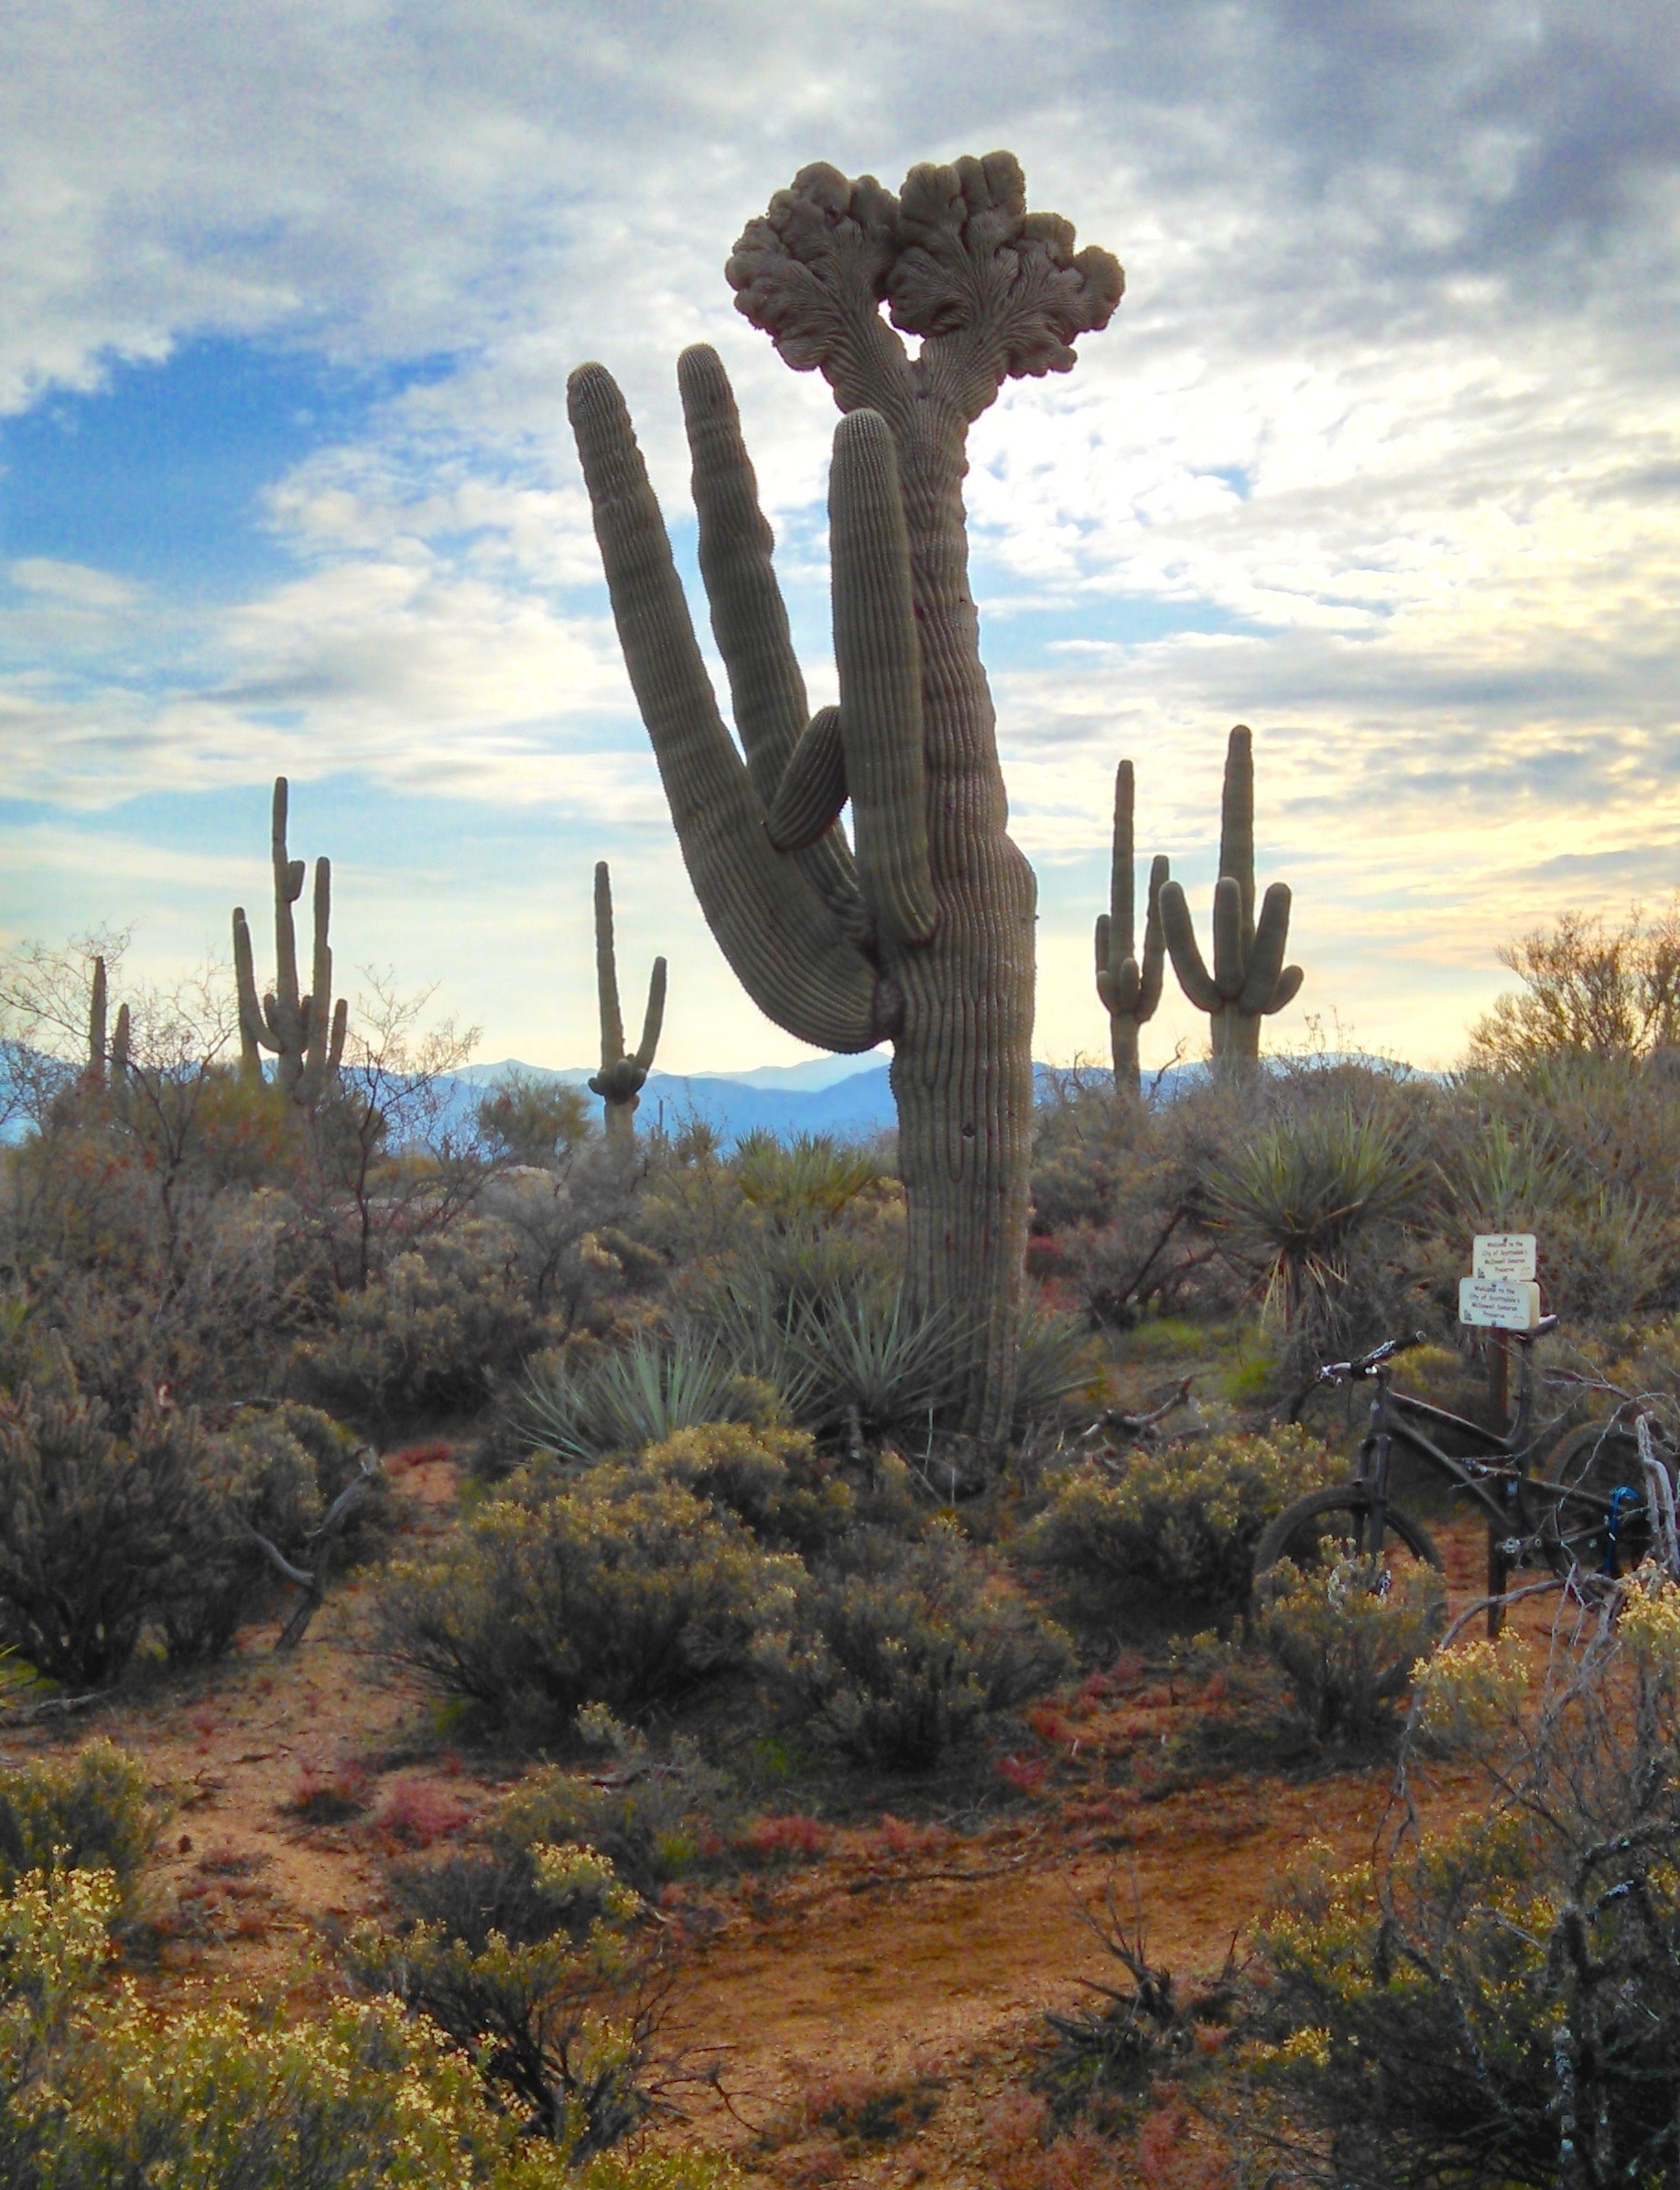 Cactus, Saguaro, Arizona, Desert, Plants, cactus, saguaro cactus